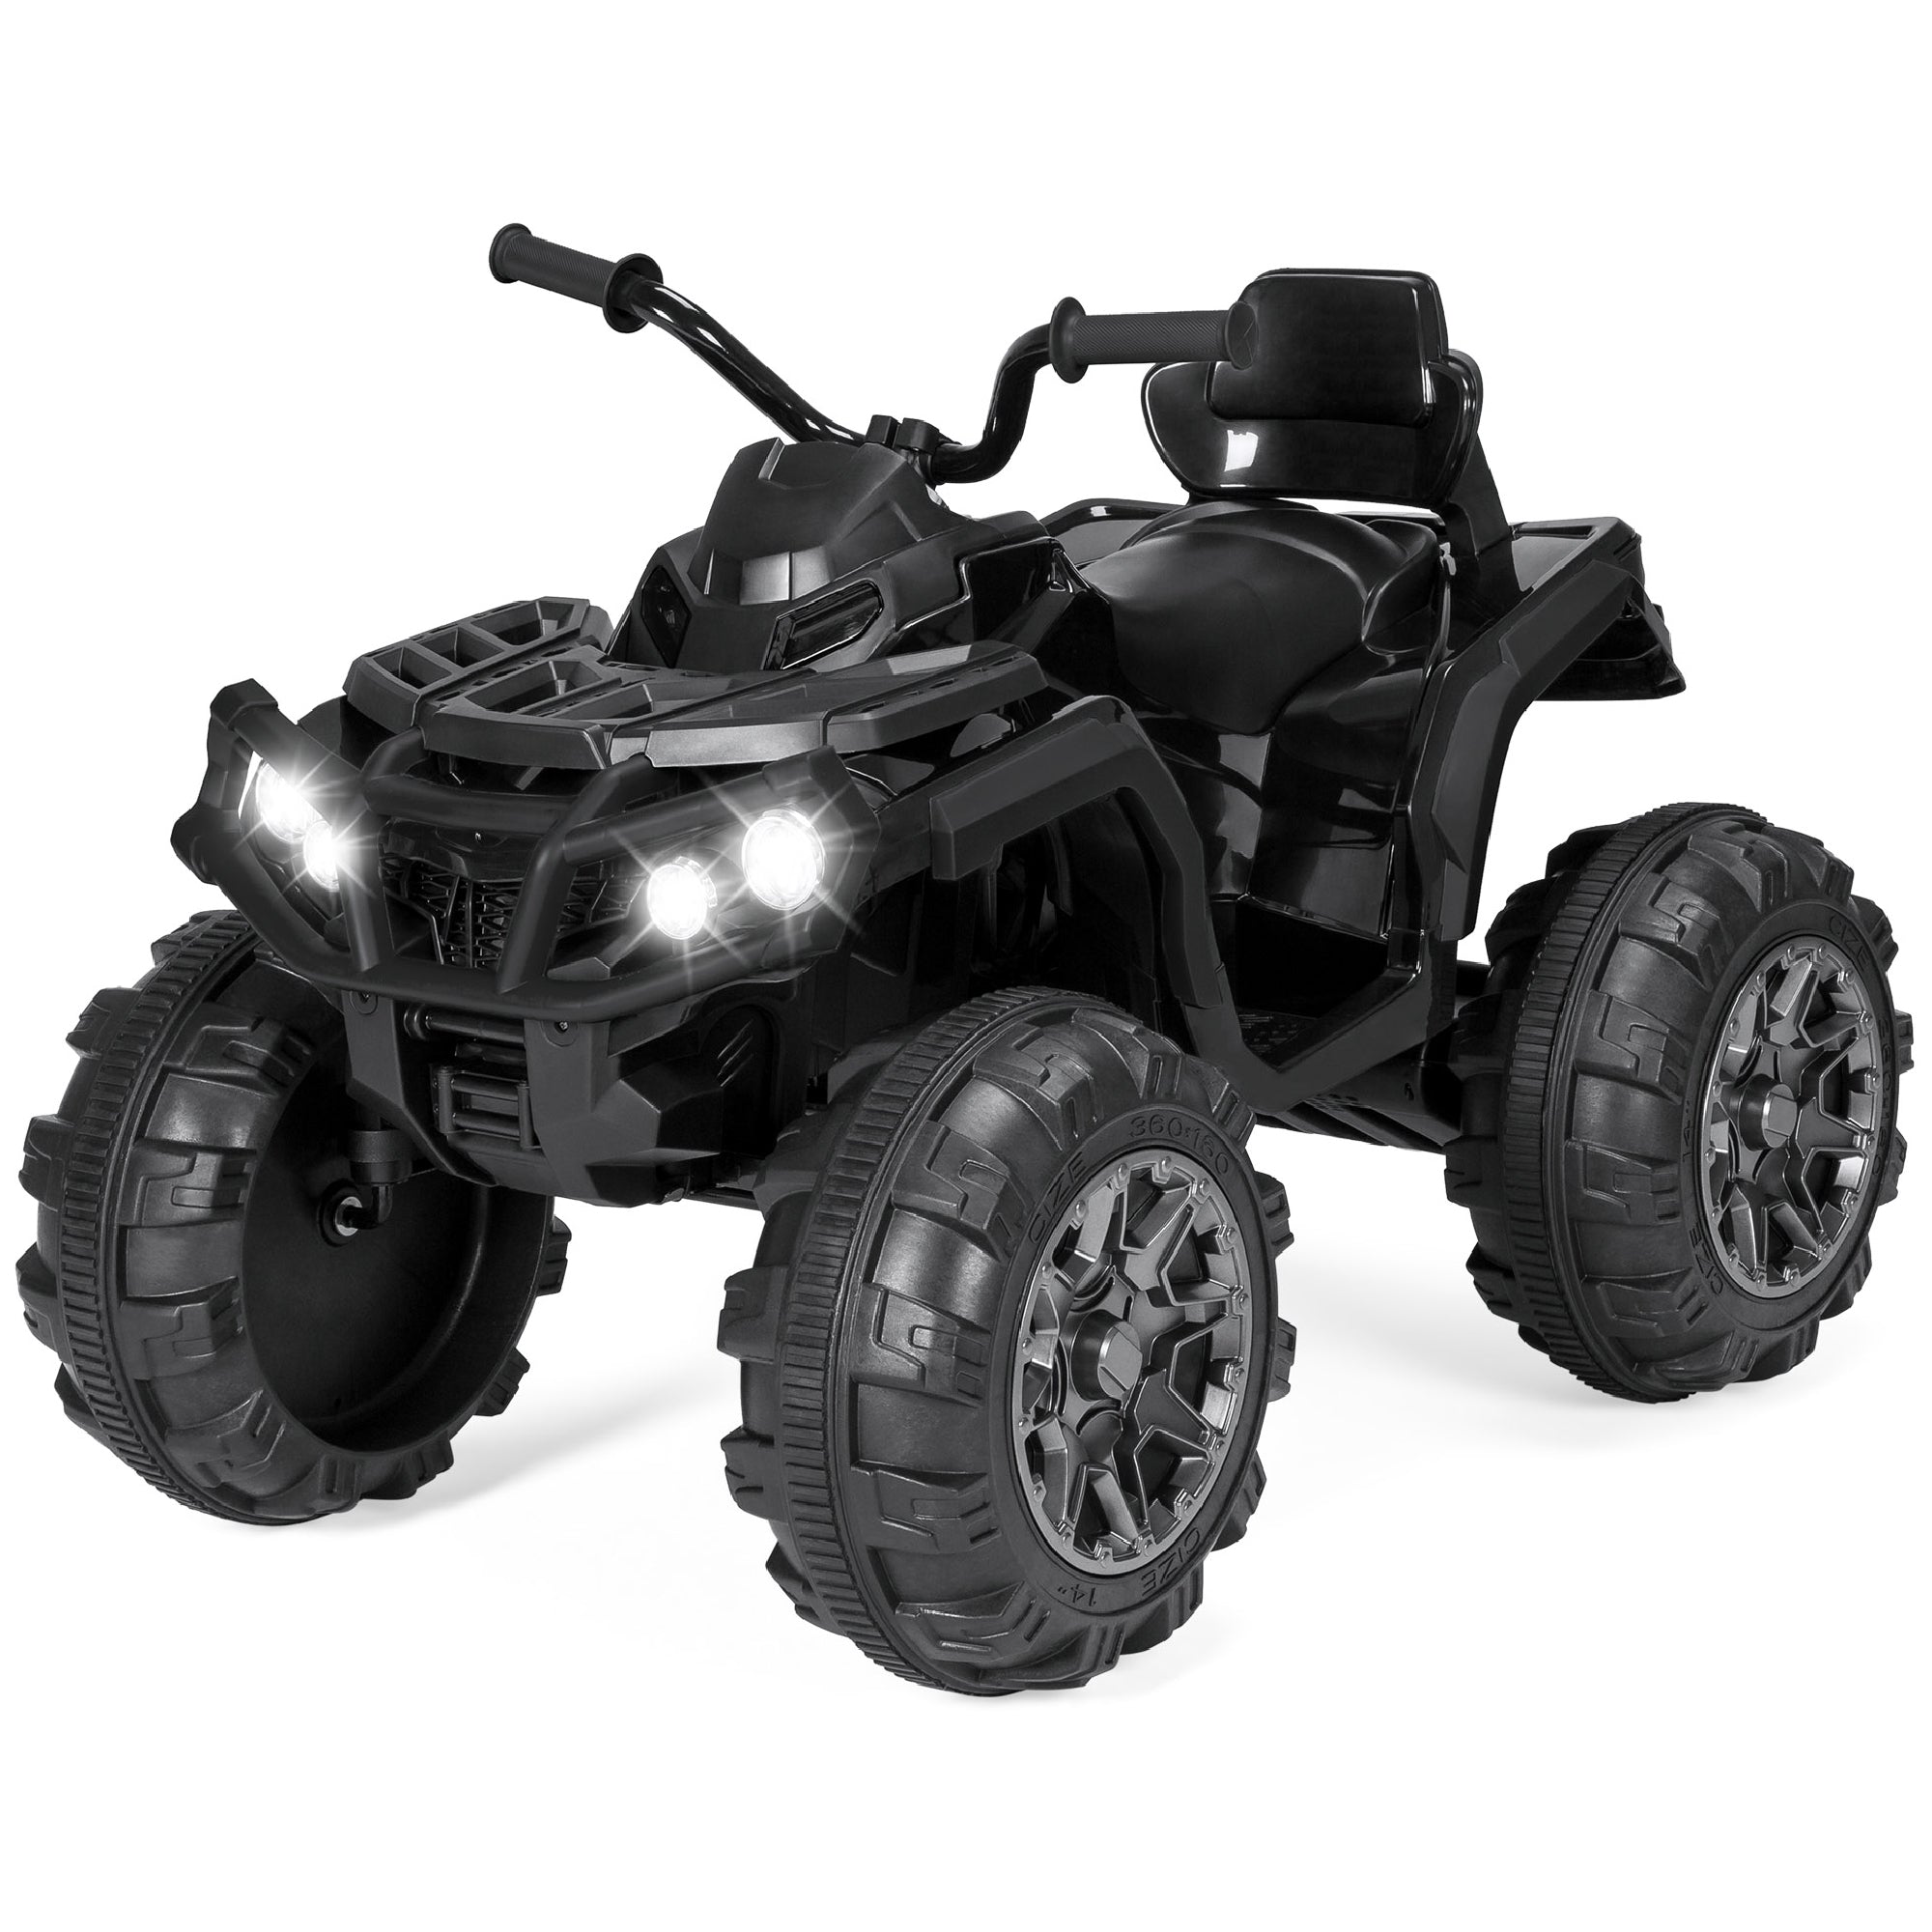 Do You Need an ATV, Quad, or 4-Wheeler?